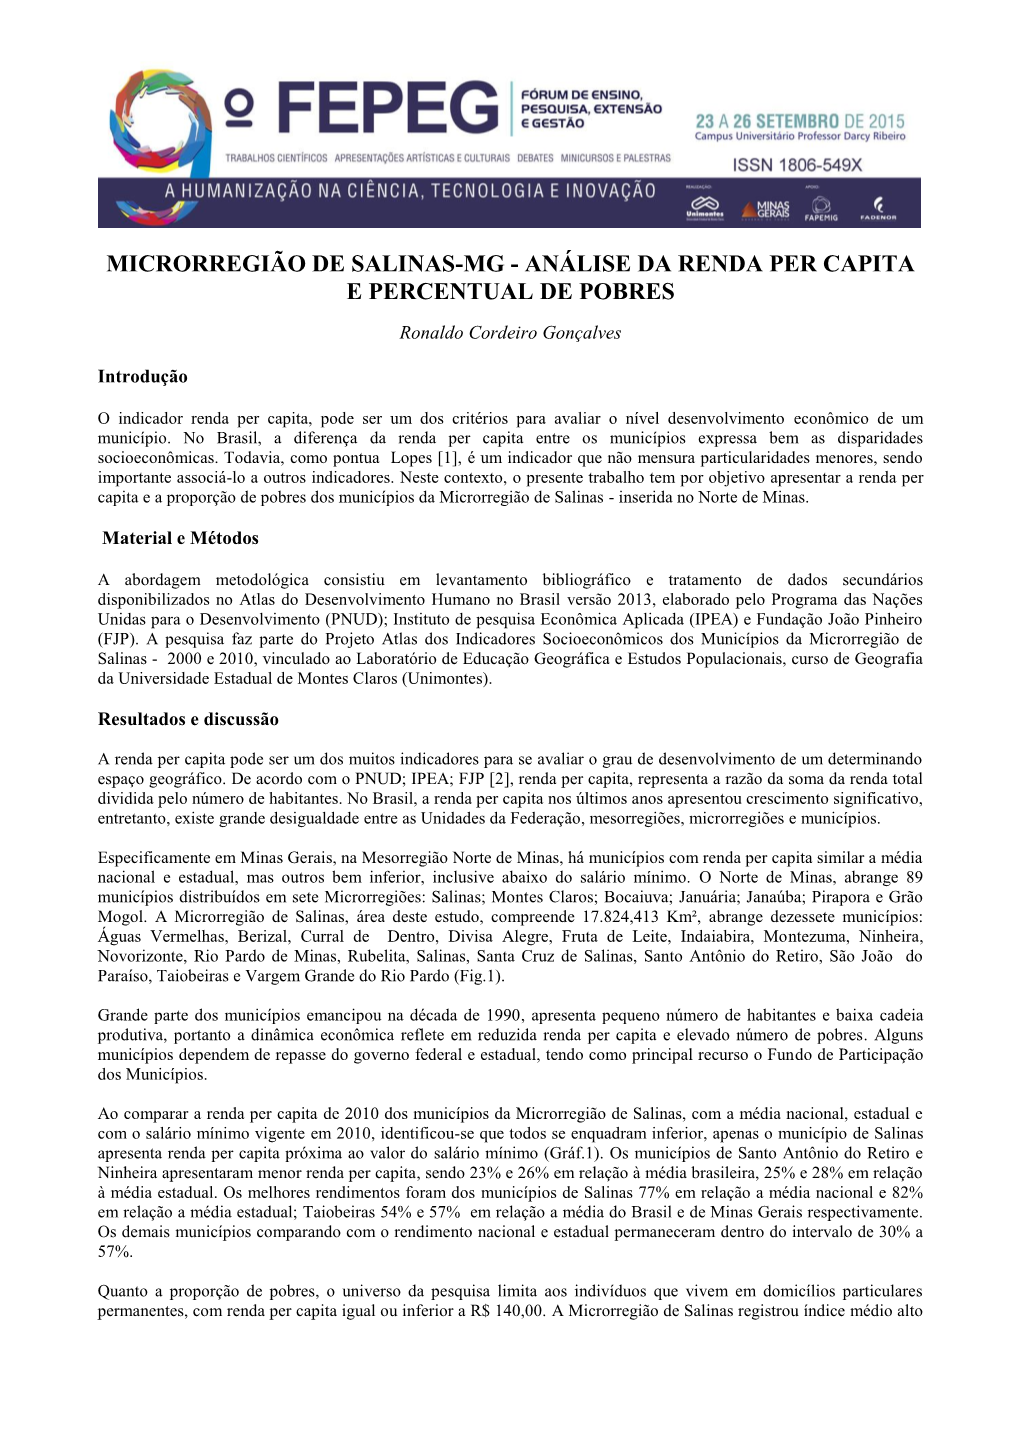 Microrregião De Salinas-Mg - Análise Da Renda Per Capita E Percentual De Pobres